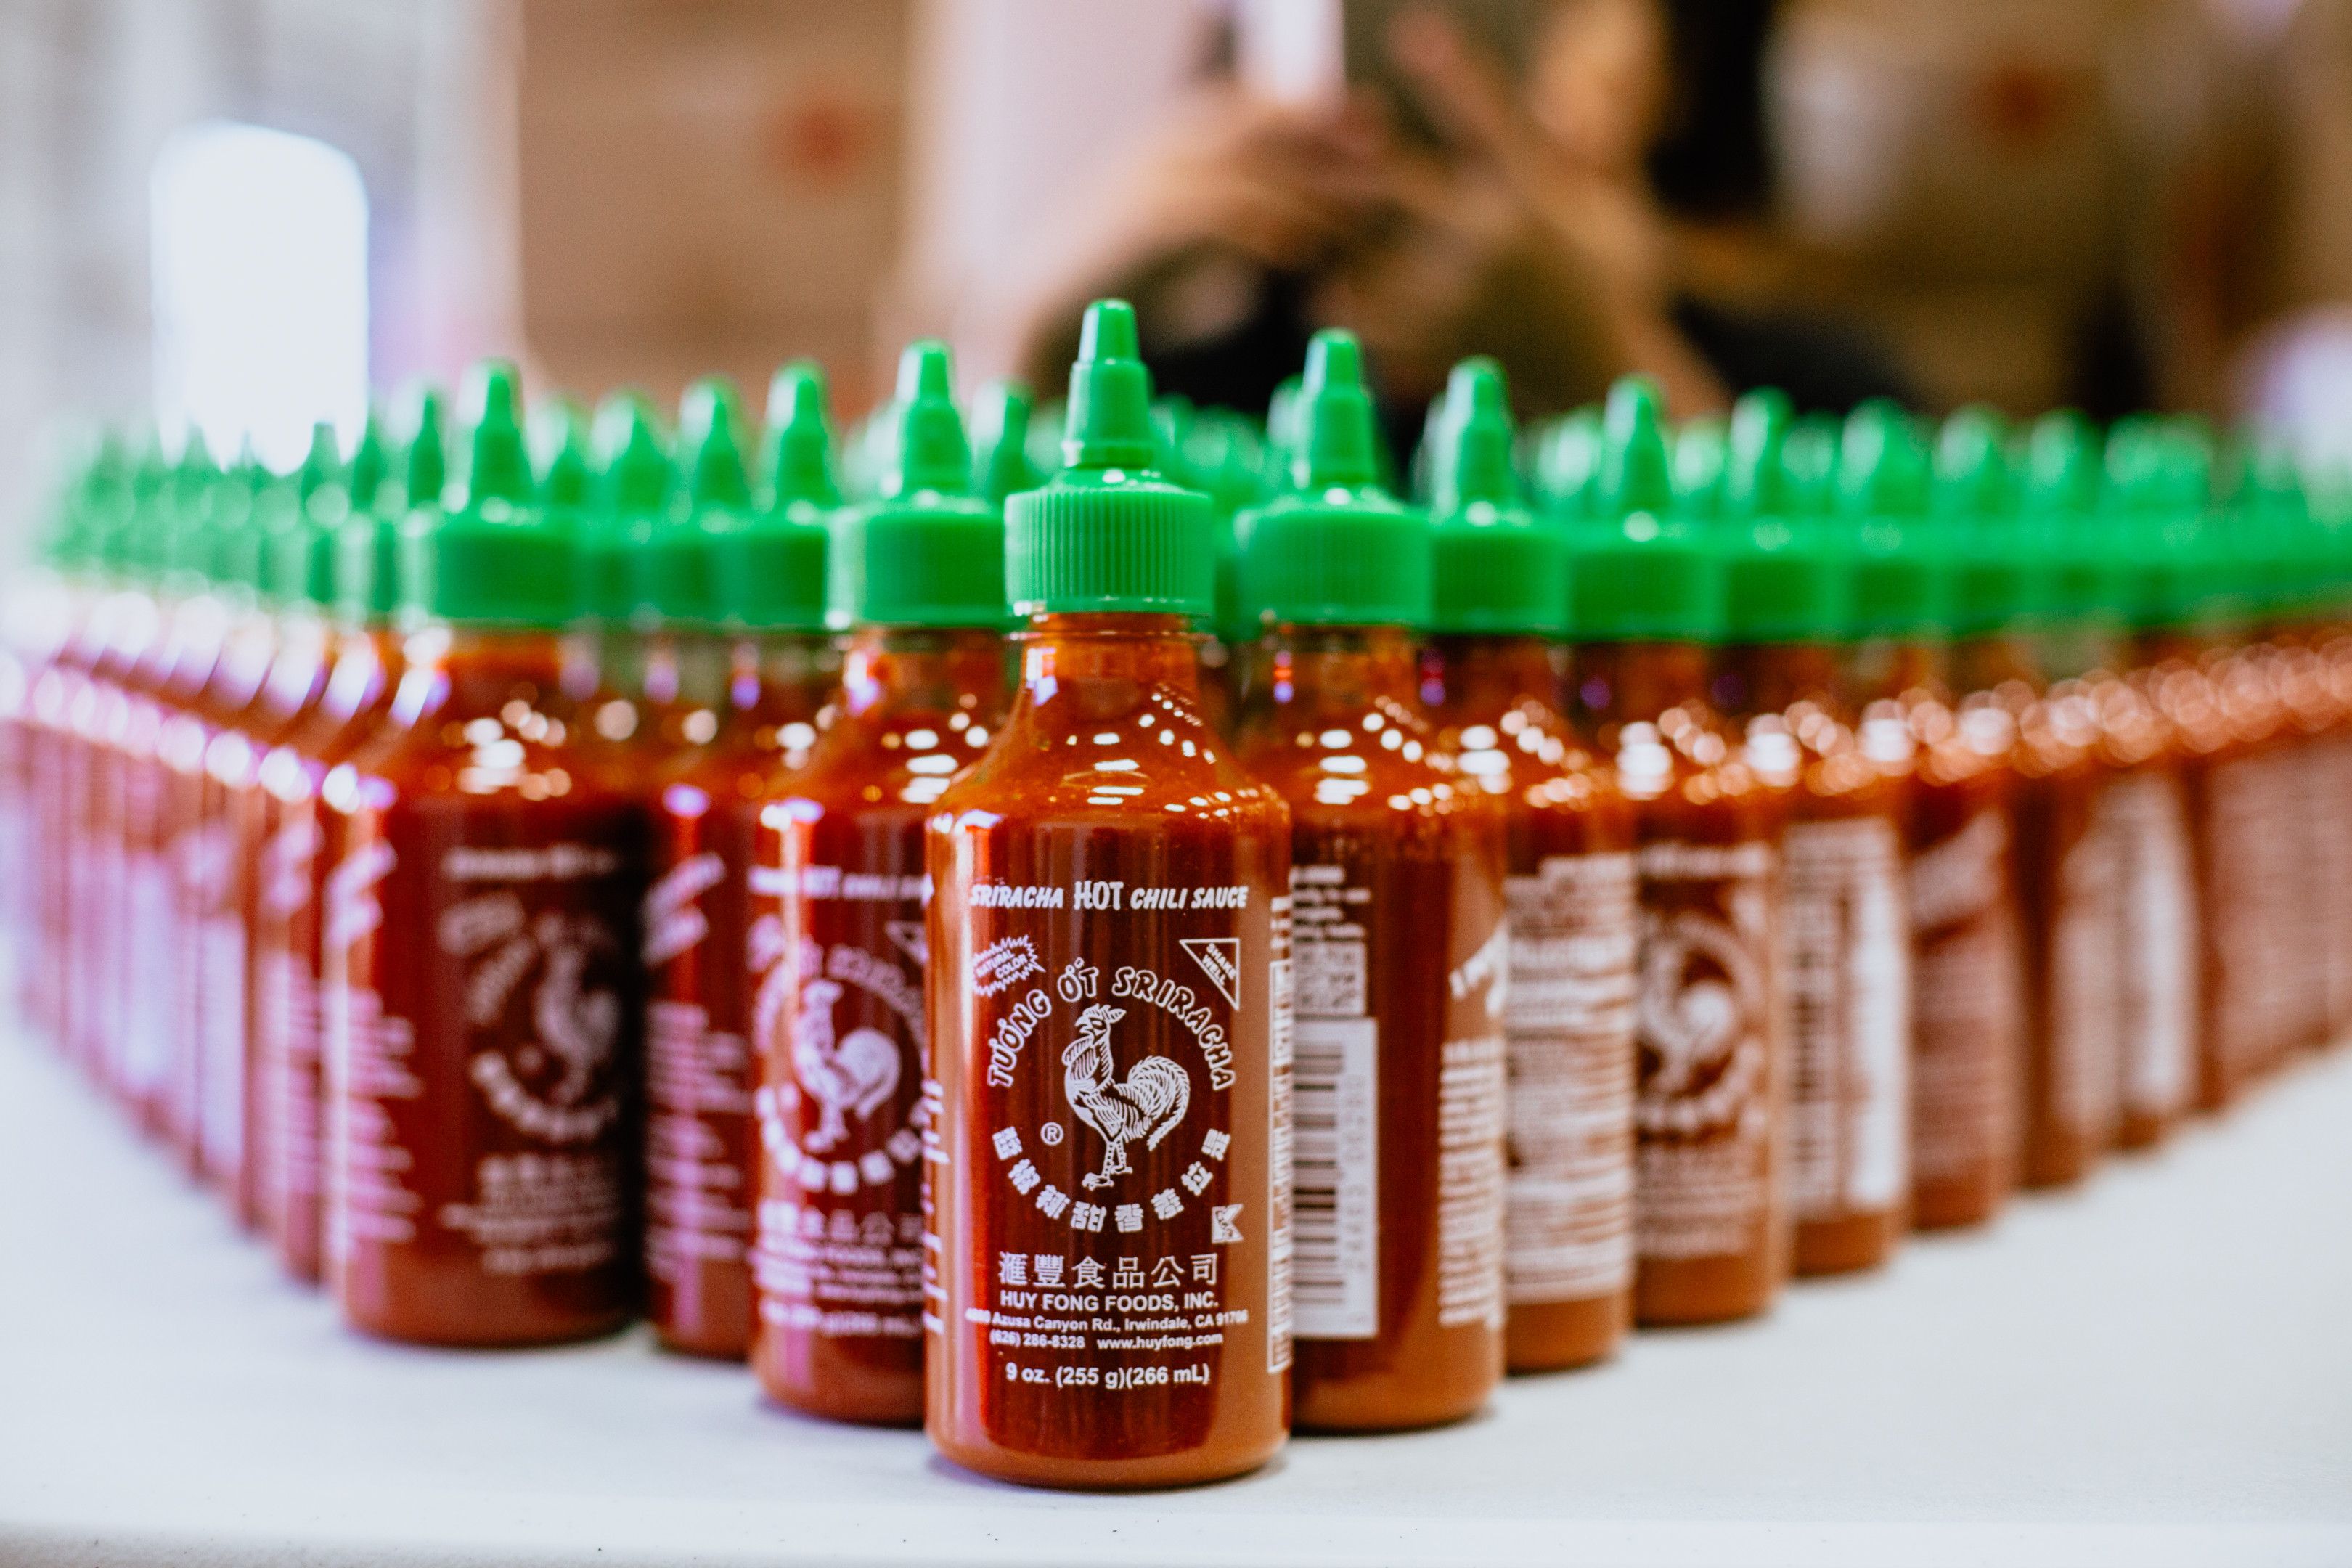 Sriracha Huy Fong Foods